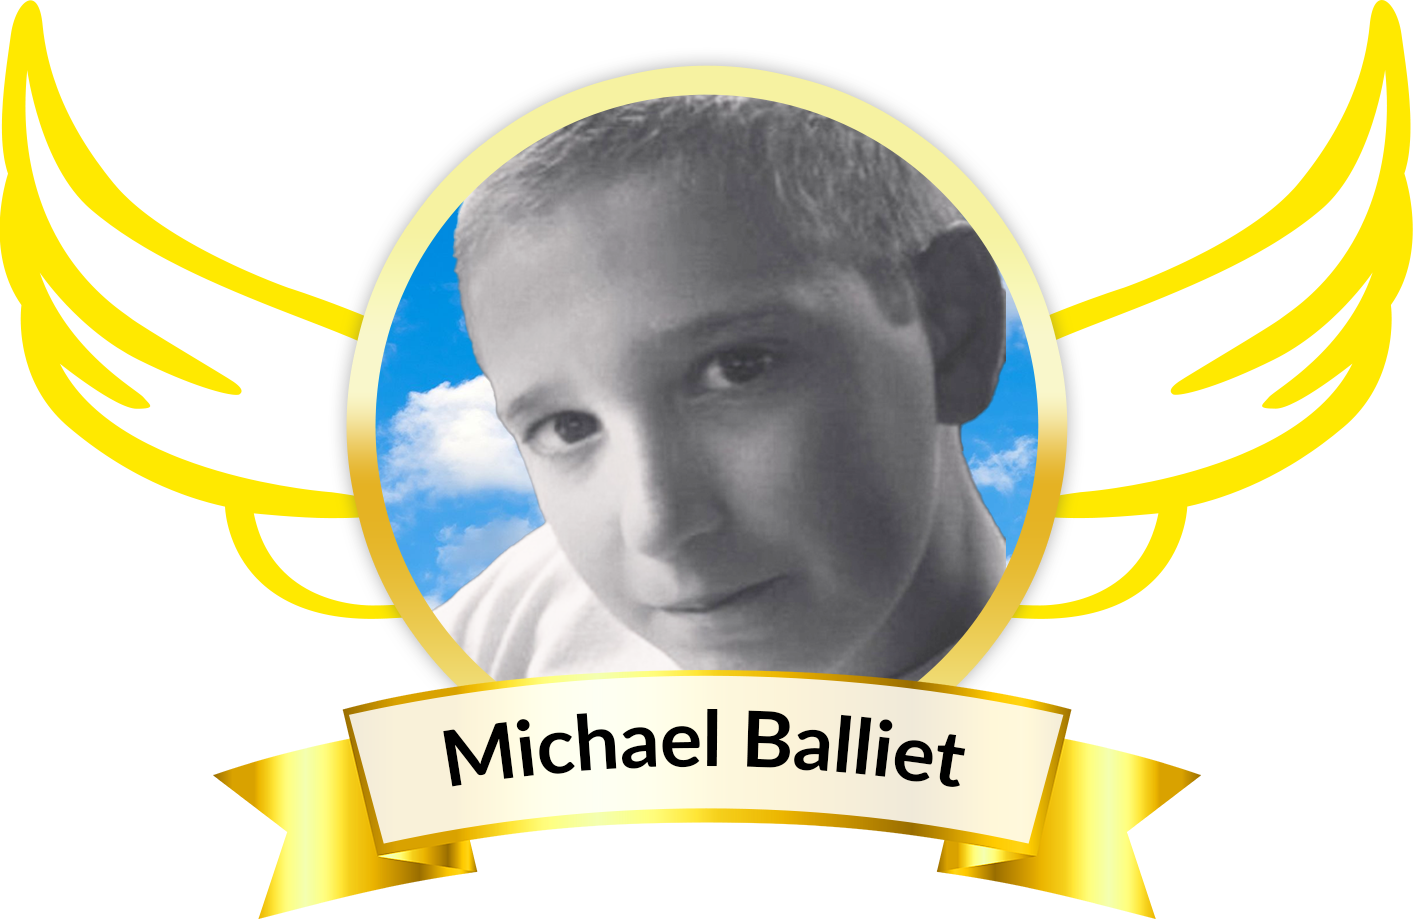 Michael Balliet